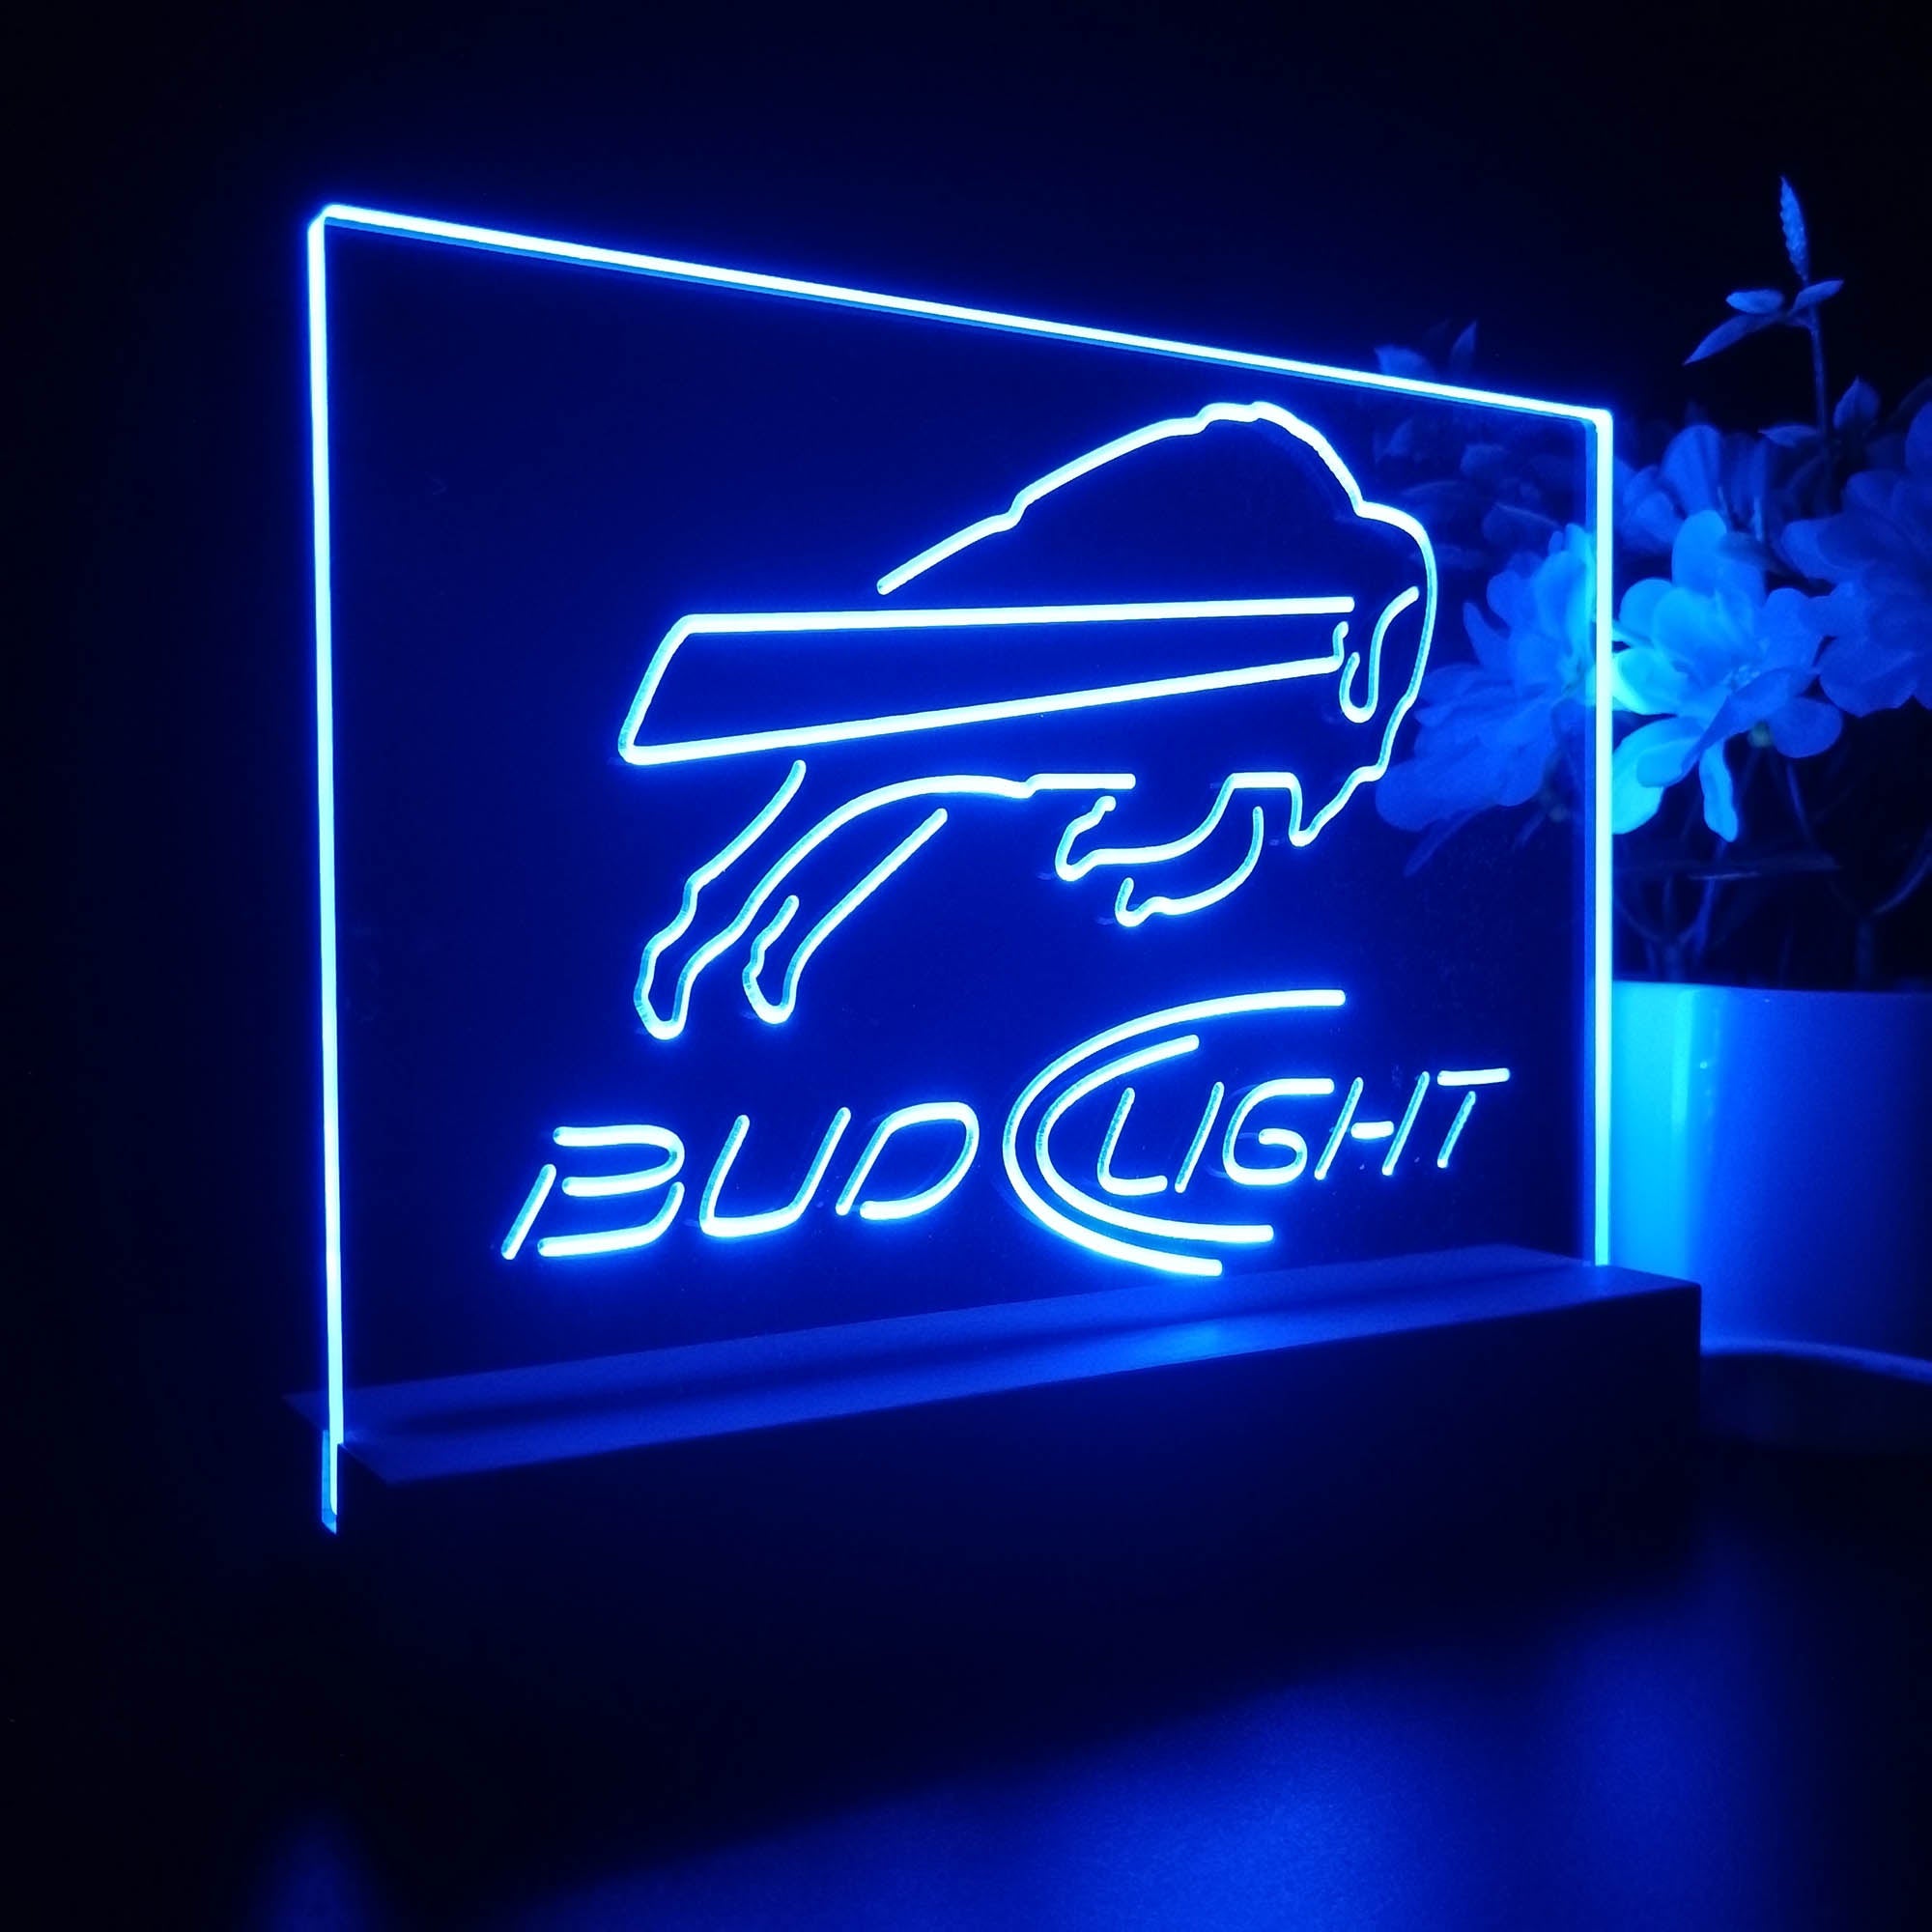 Buffalo Bills Bud Light Sport Team Night Light 3D Illusion Lamp